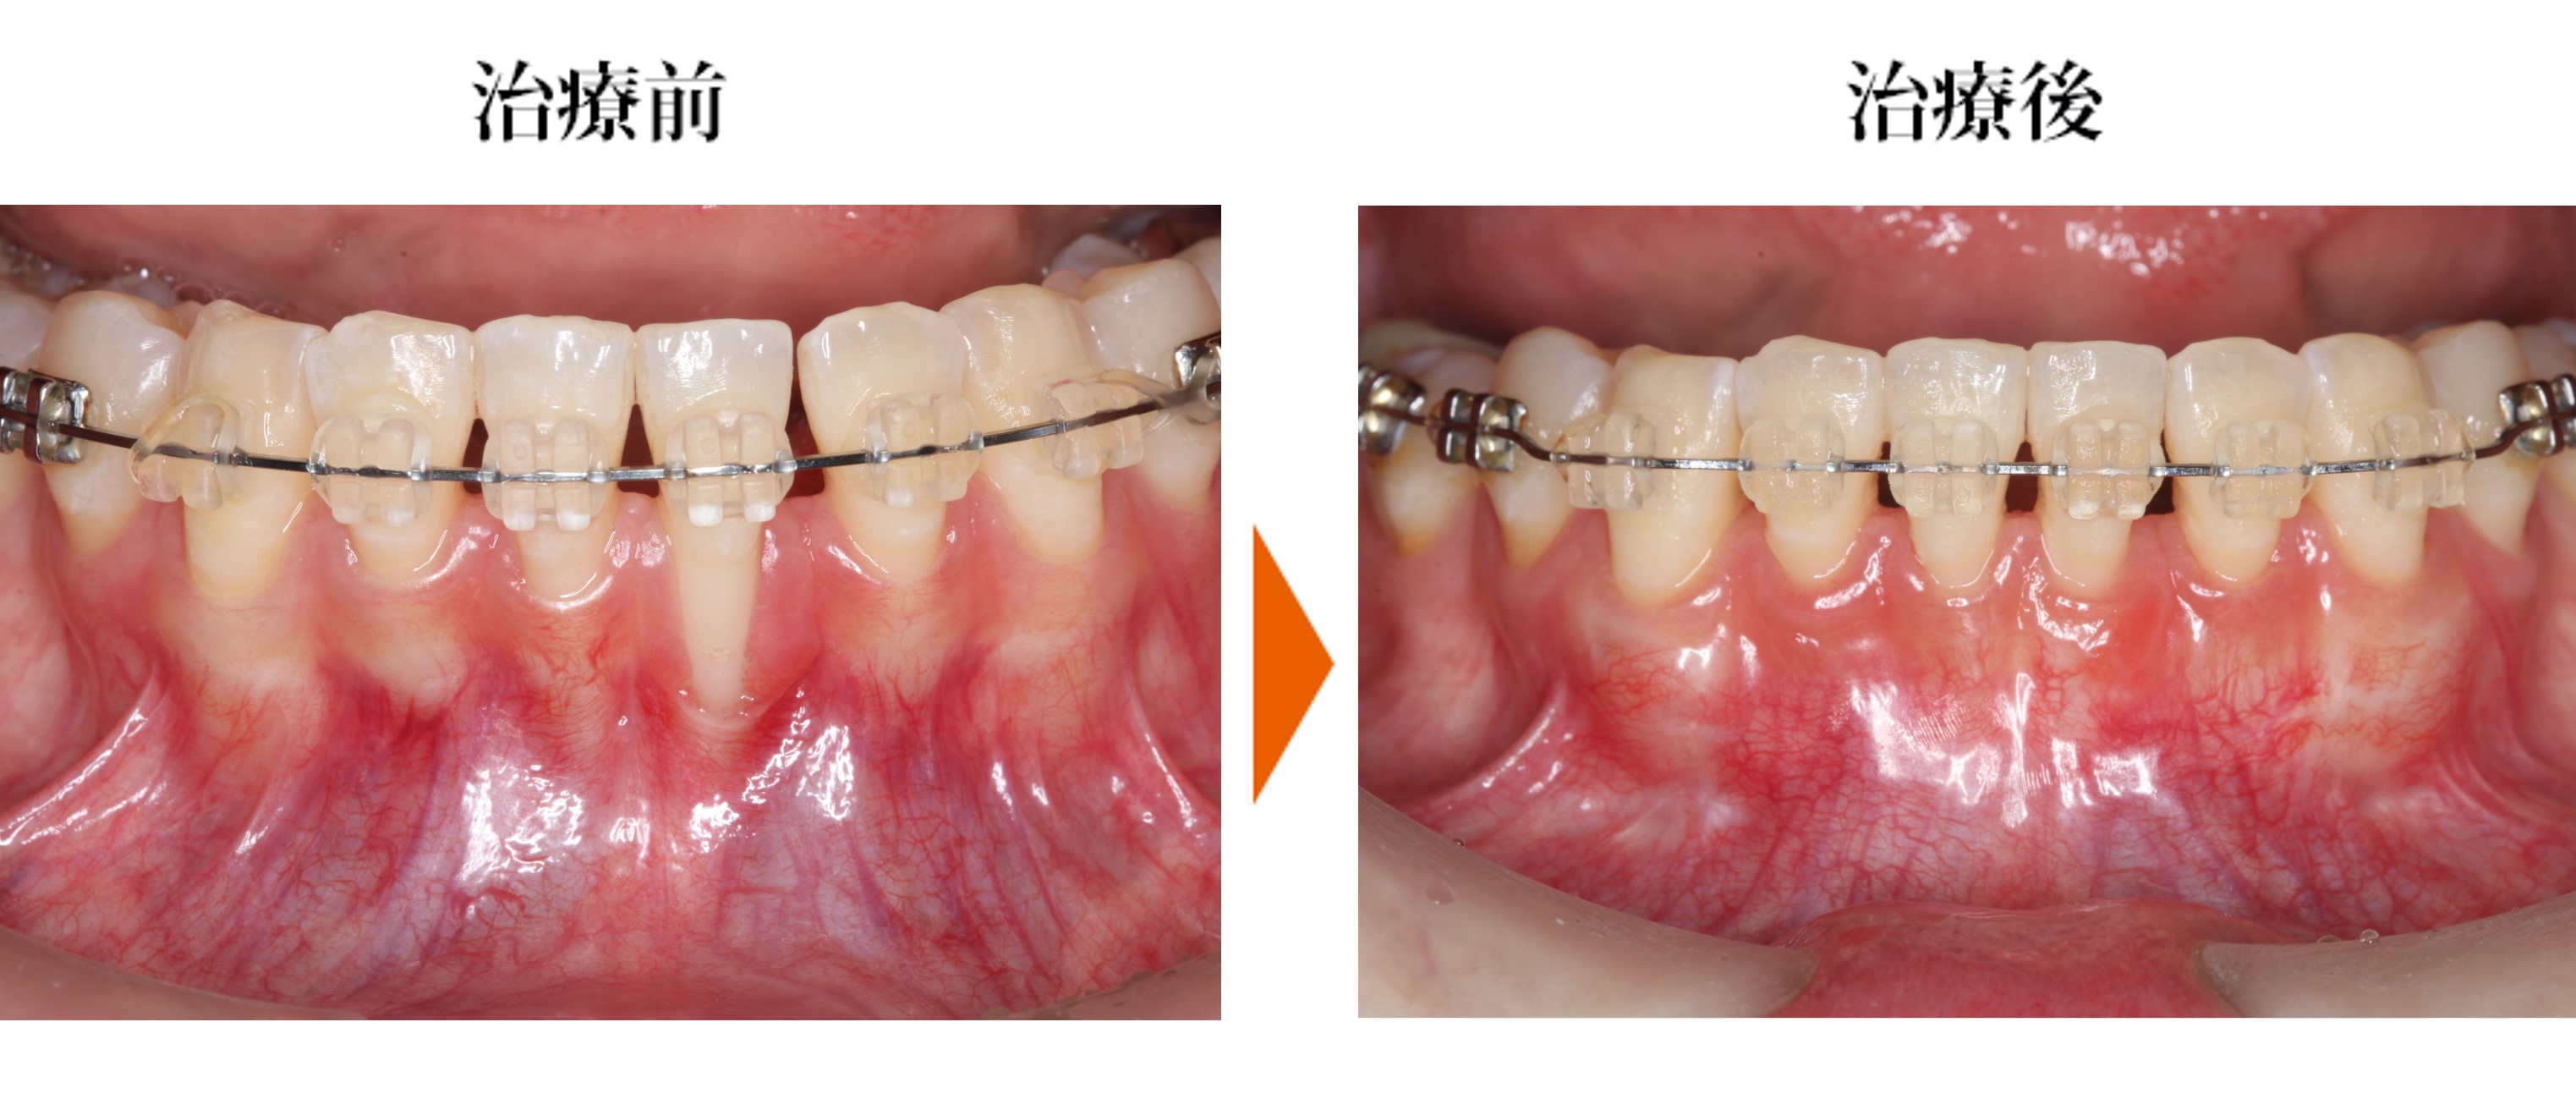 歯肉退縮の改善と歯根が透過している部分の歯肉の厚みの改善